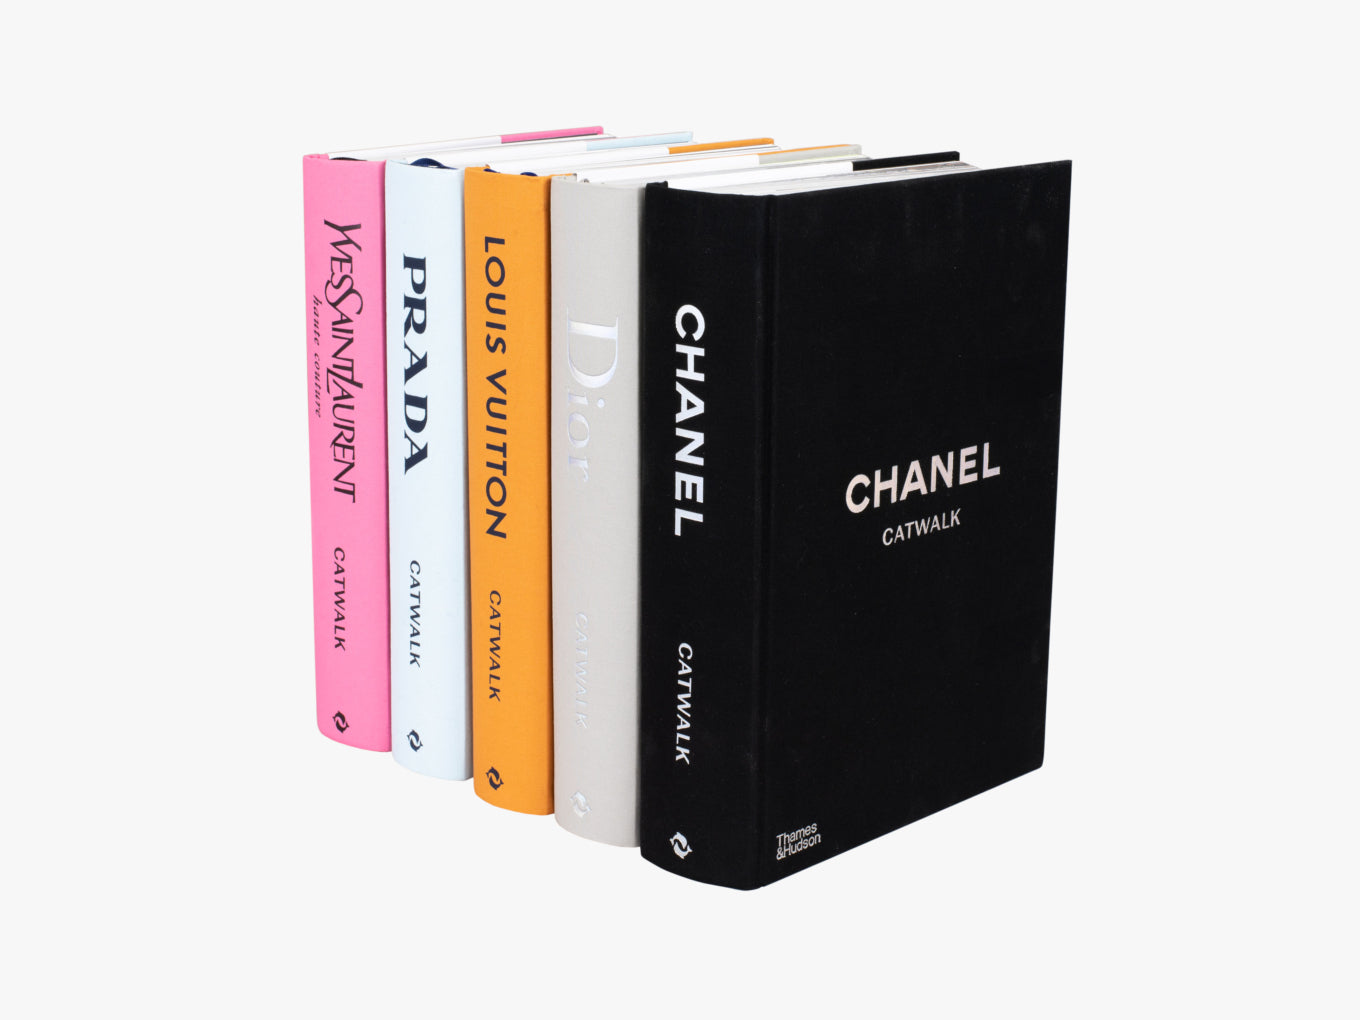 16 Best Chanel Book Decor ideas  book decor decor chanel book decor